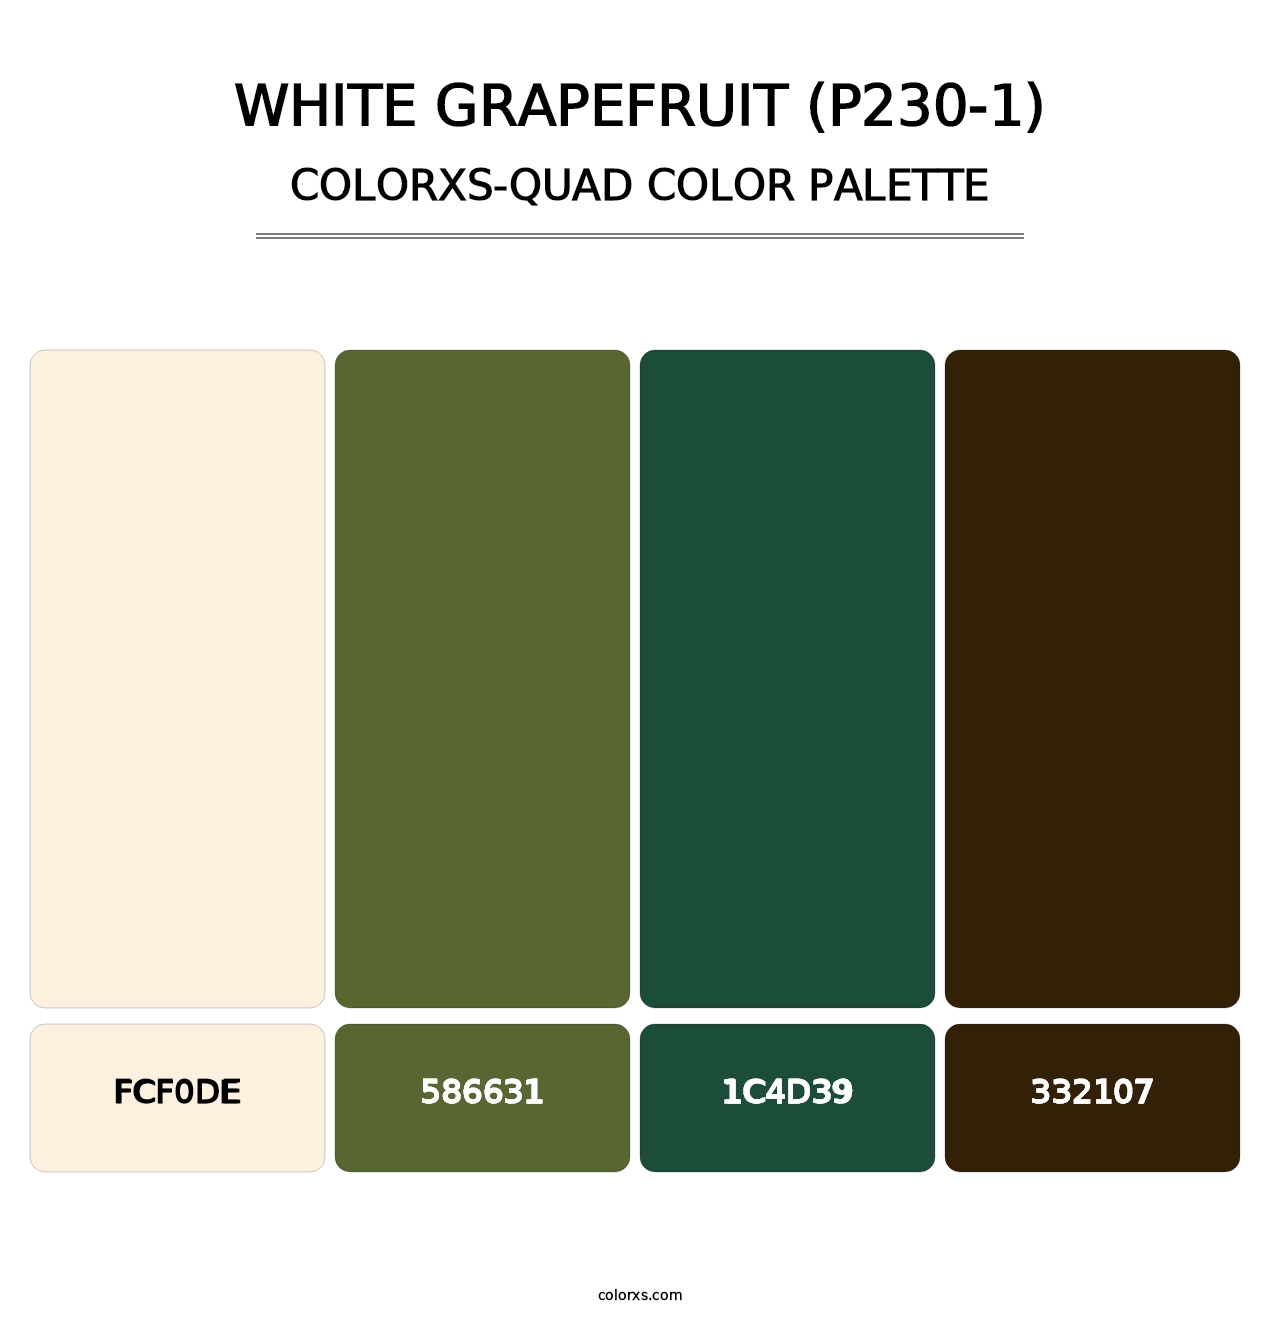 White Grapefruit (P230-1) - Colorxs Quad Palette